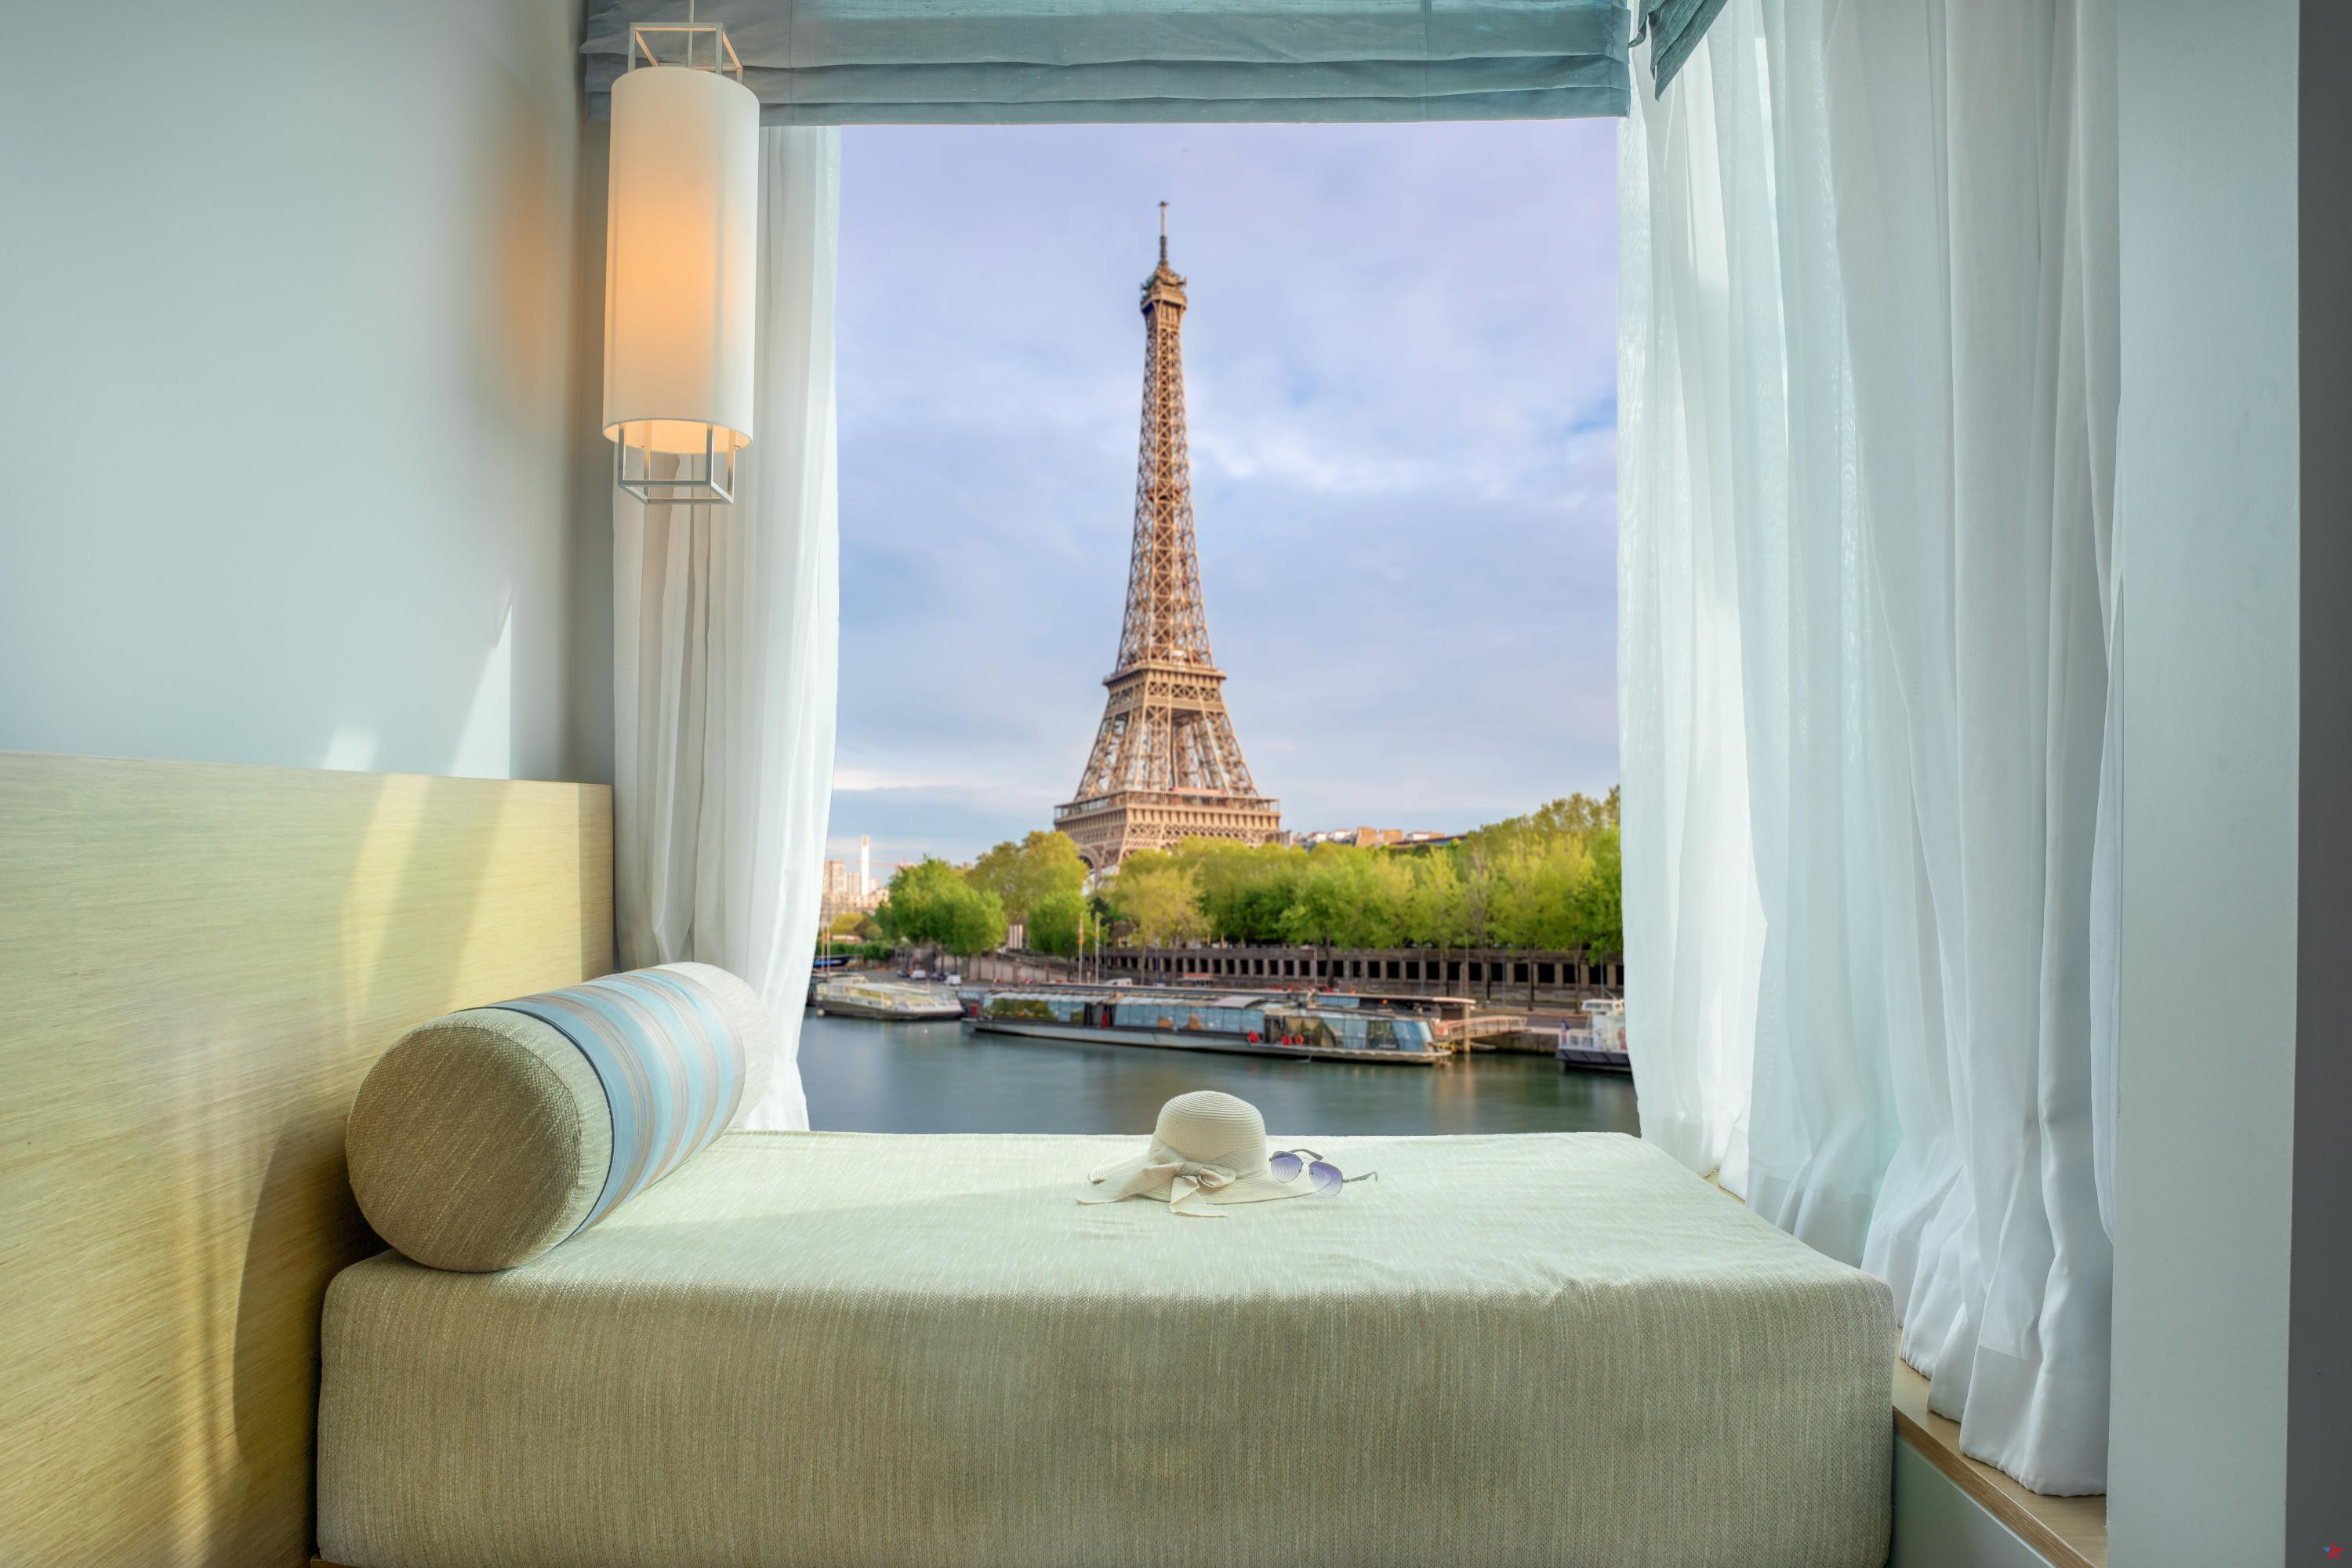 En París, el precio de las habitaciones de hotel sigue aumentando (y no va a mejorar pronto)